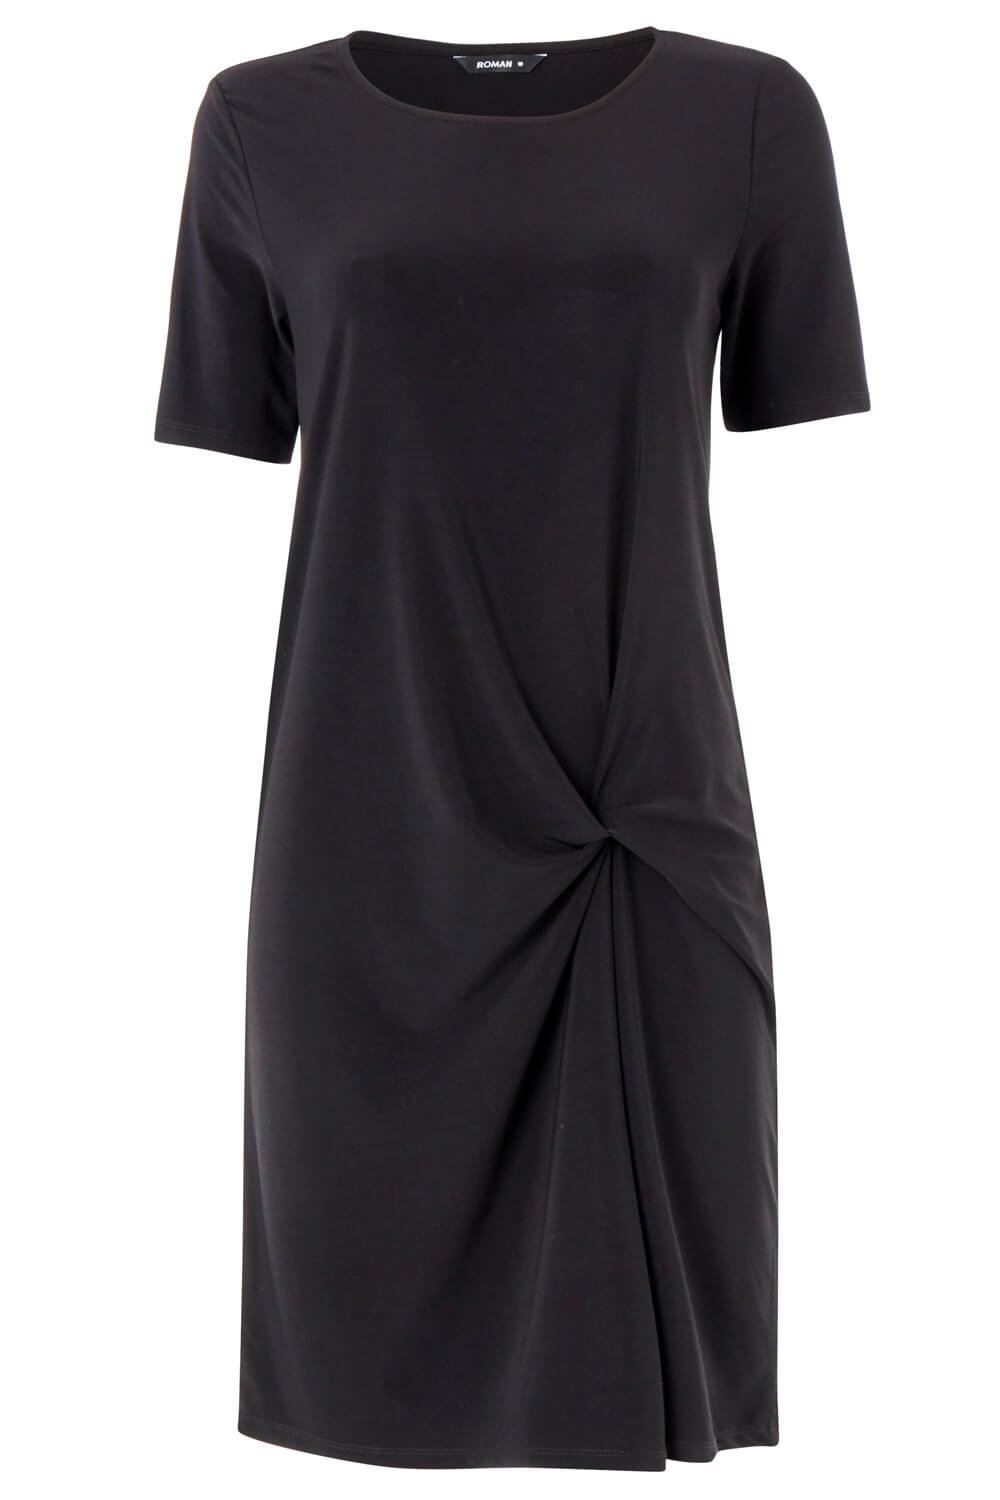 Black Black Side Twist Shift Dress, Image 5 of 5